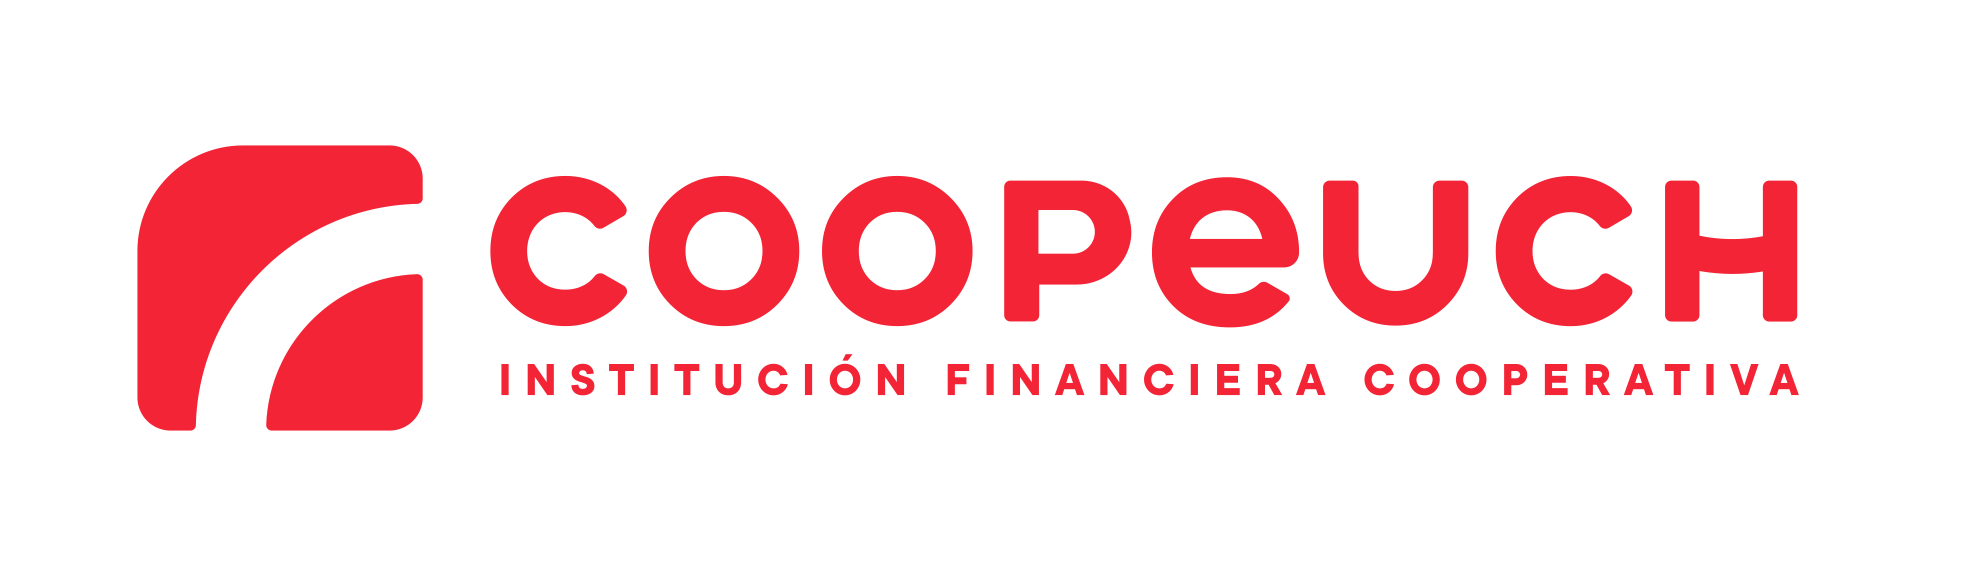 logo-coopeuch-1ra-versión-fondo-transp